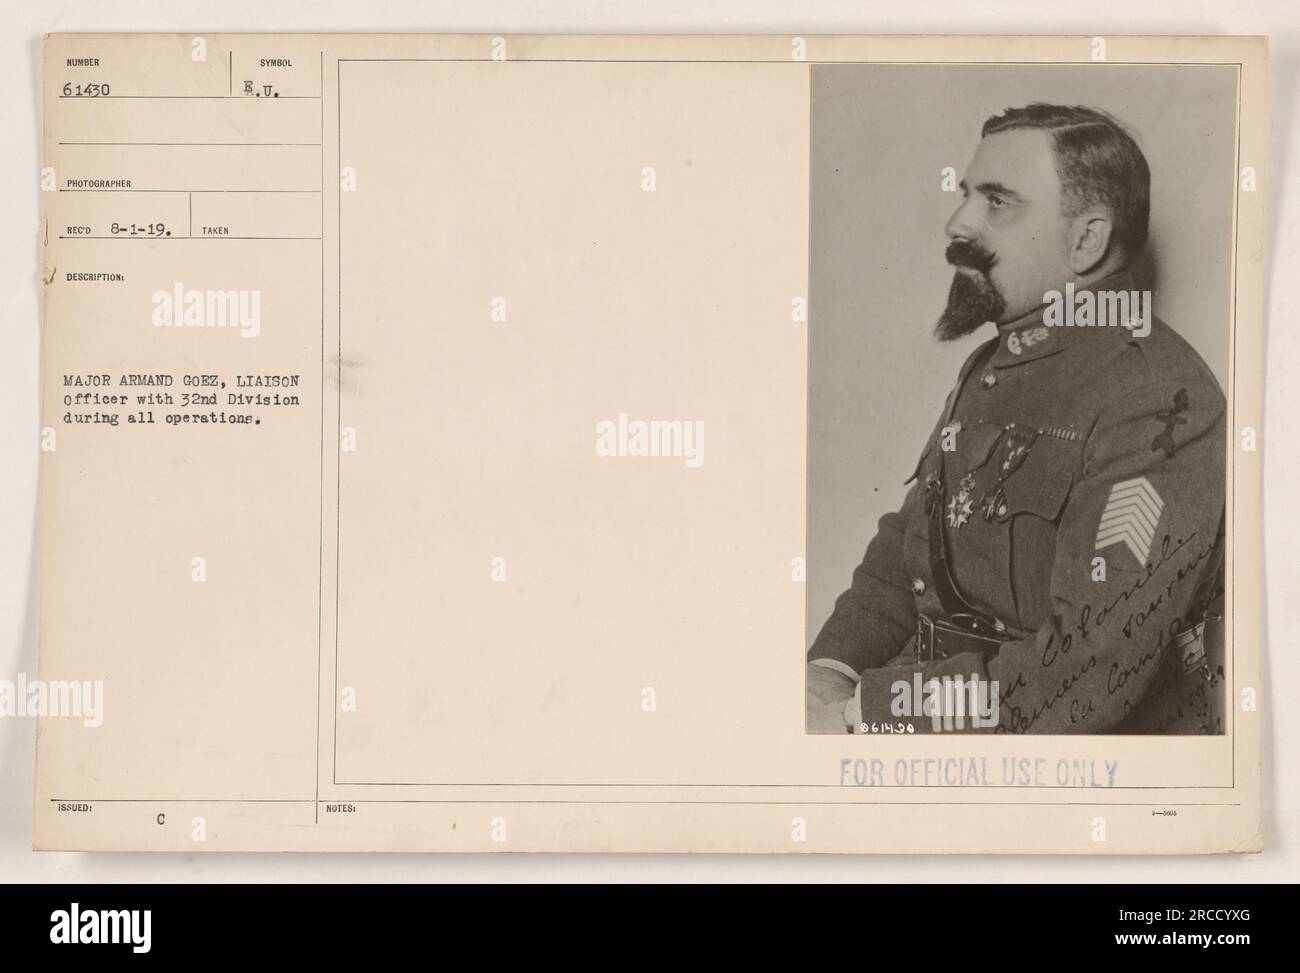 Das Foto zeigt Major Armand Goez, einen Verbindungsbeamten der 32. Division, während des Ersten Weltkriegs. Das Bild wurde an einem nicht näher bezeichneten Datum aufgenommen und trägt die Kennnummer 61430 mit einem offiziellen Vermerk, aus dem hervorgeht, dass es am 1. August 1919 eingegangen ist. Das Bild enthält Anmerkungen in französischer Sprache, in denen „Colonele meus sauren la Compa“ erwähnt und mit „NUR FÜR DEN OFFIZIELLEN GEBRAUCH“ gekennzeichnet wird. Stockfoto